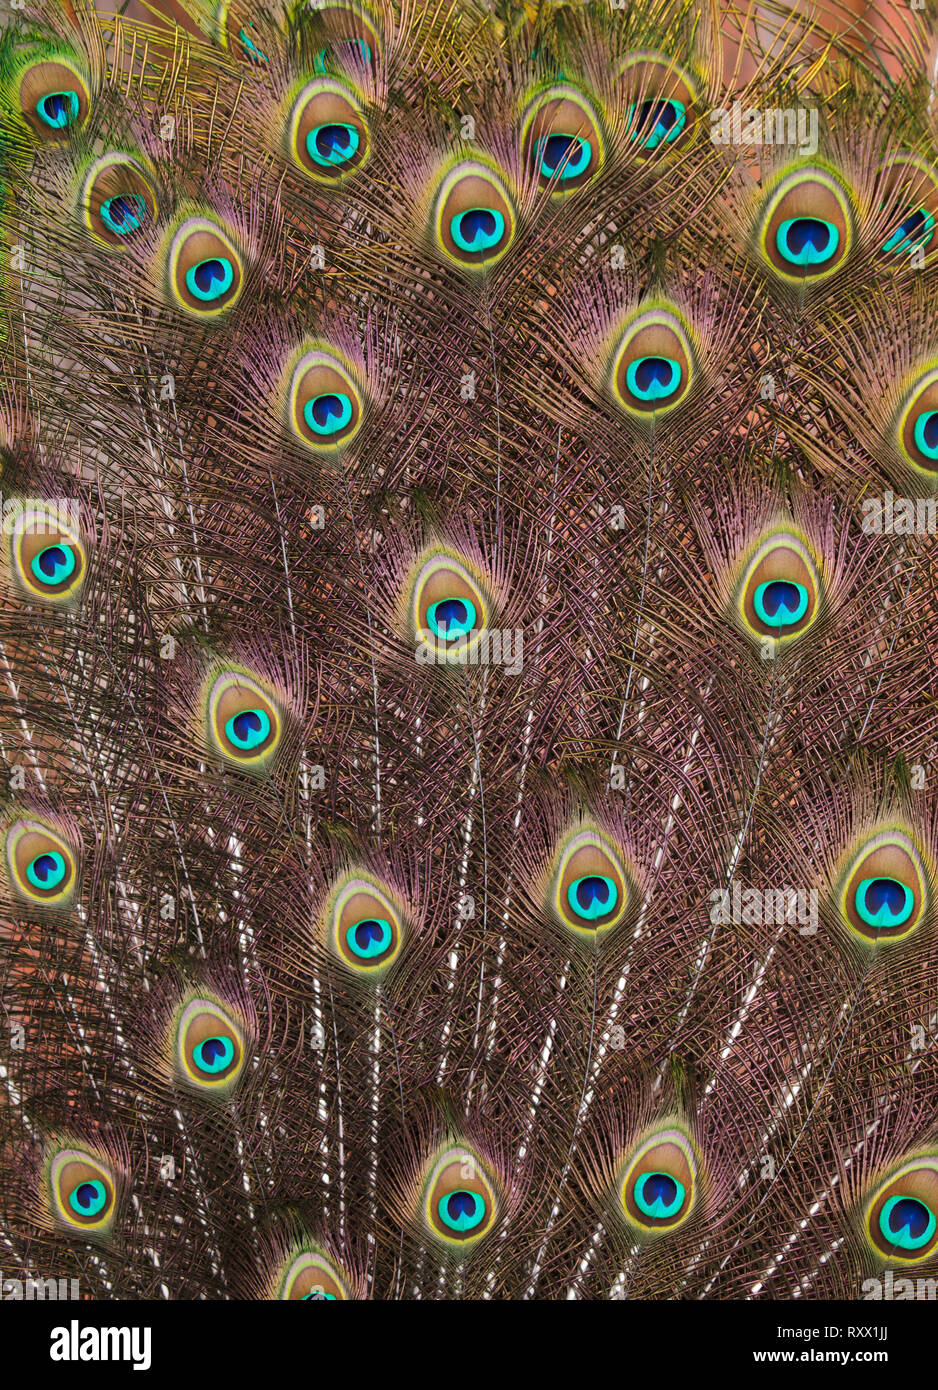 Le plumage des paons indiens (Pavo cristatus), également connu sous le nom de paons bleus. Banque D'Images